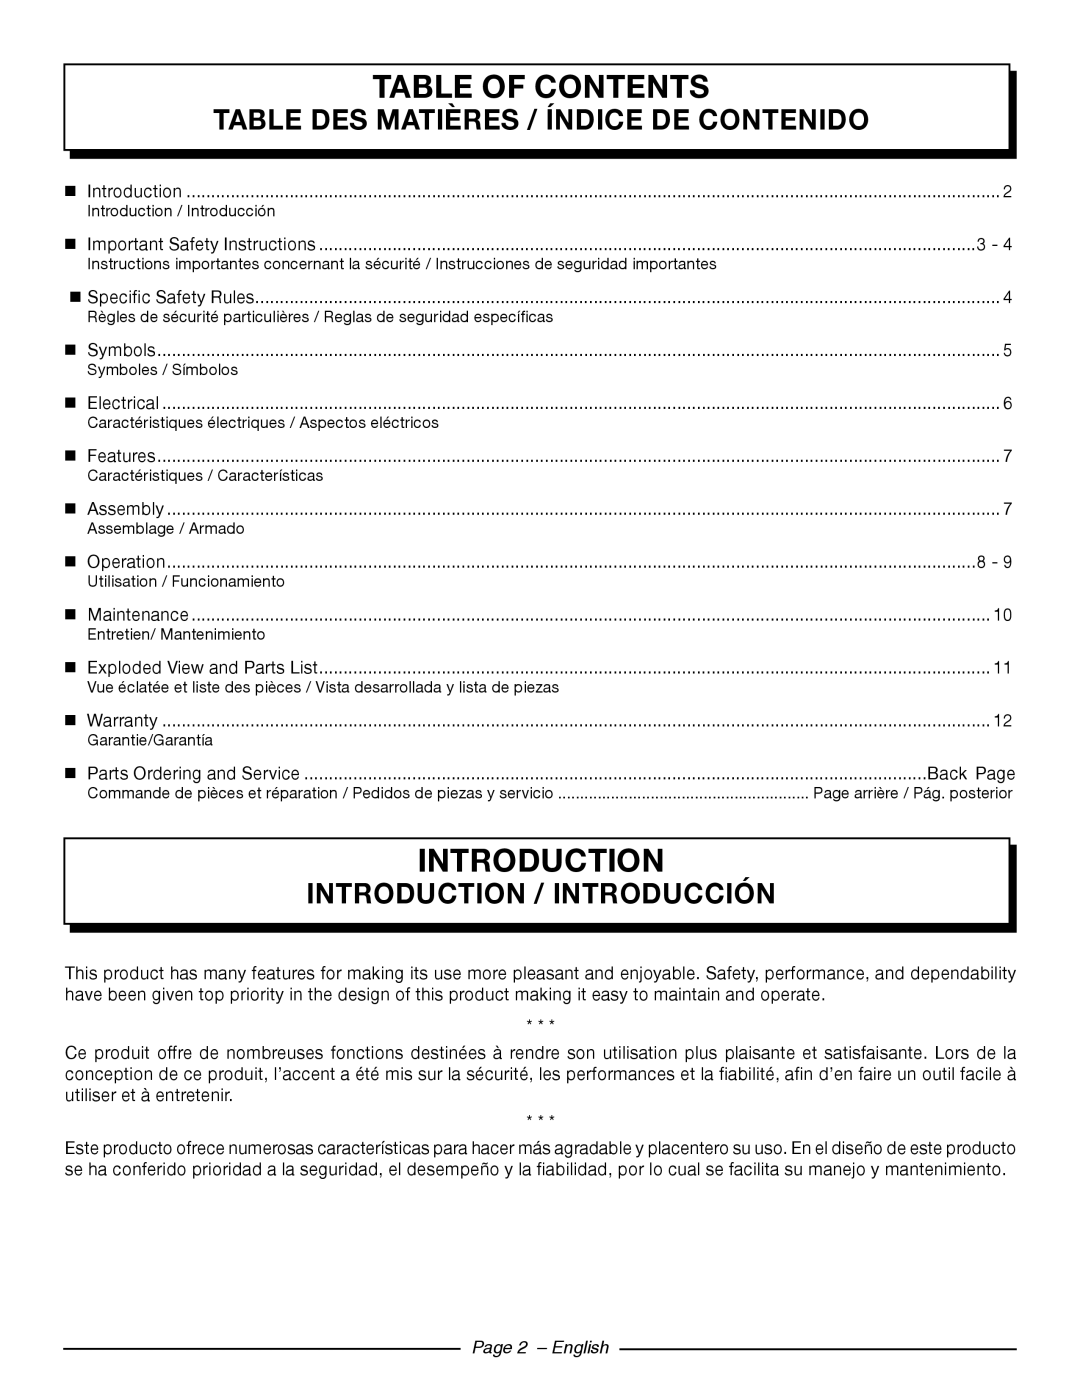 Homelite UT44121 Table Of Contents, Introduction, Page 2 - English, Table Des Matières / Índice De Contenido 